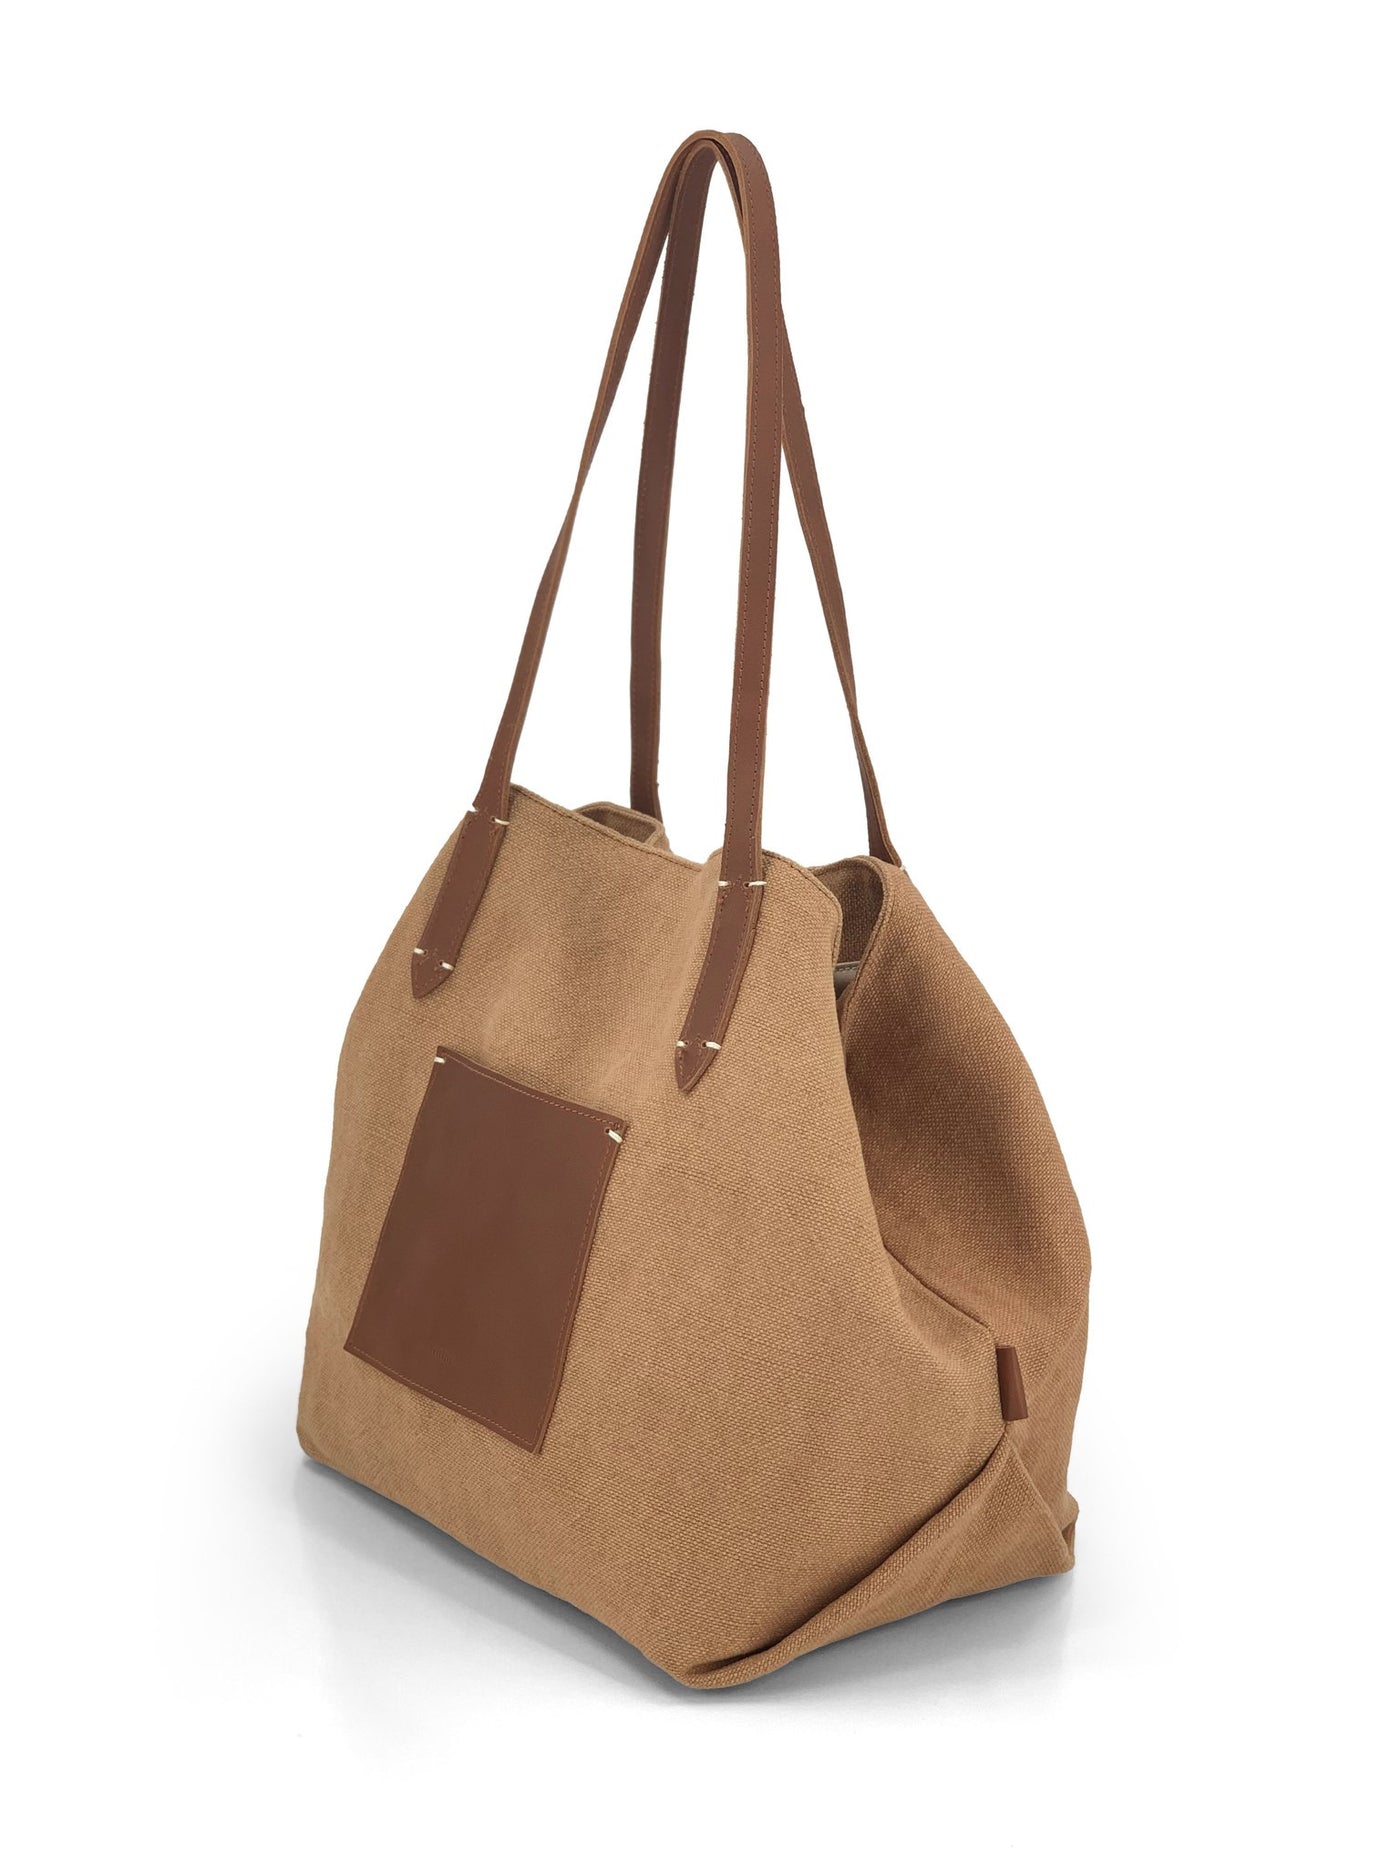 Natural Tote Bag / Leather Trim